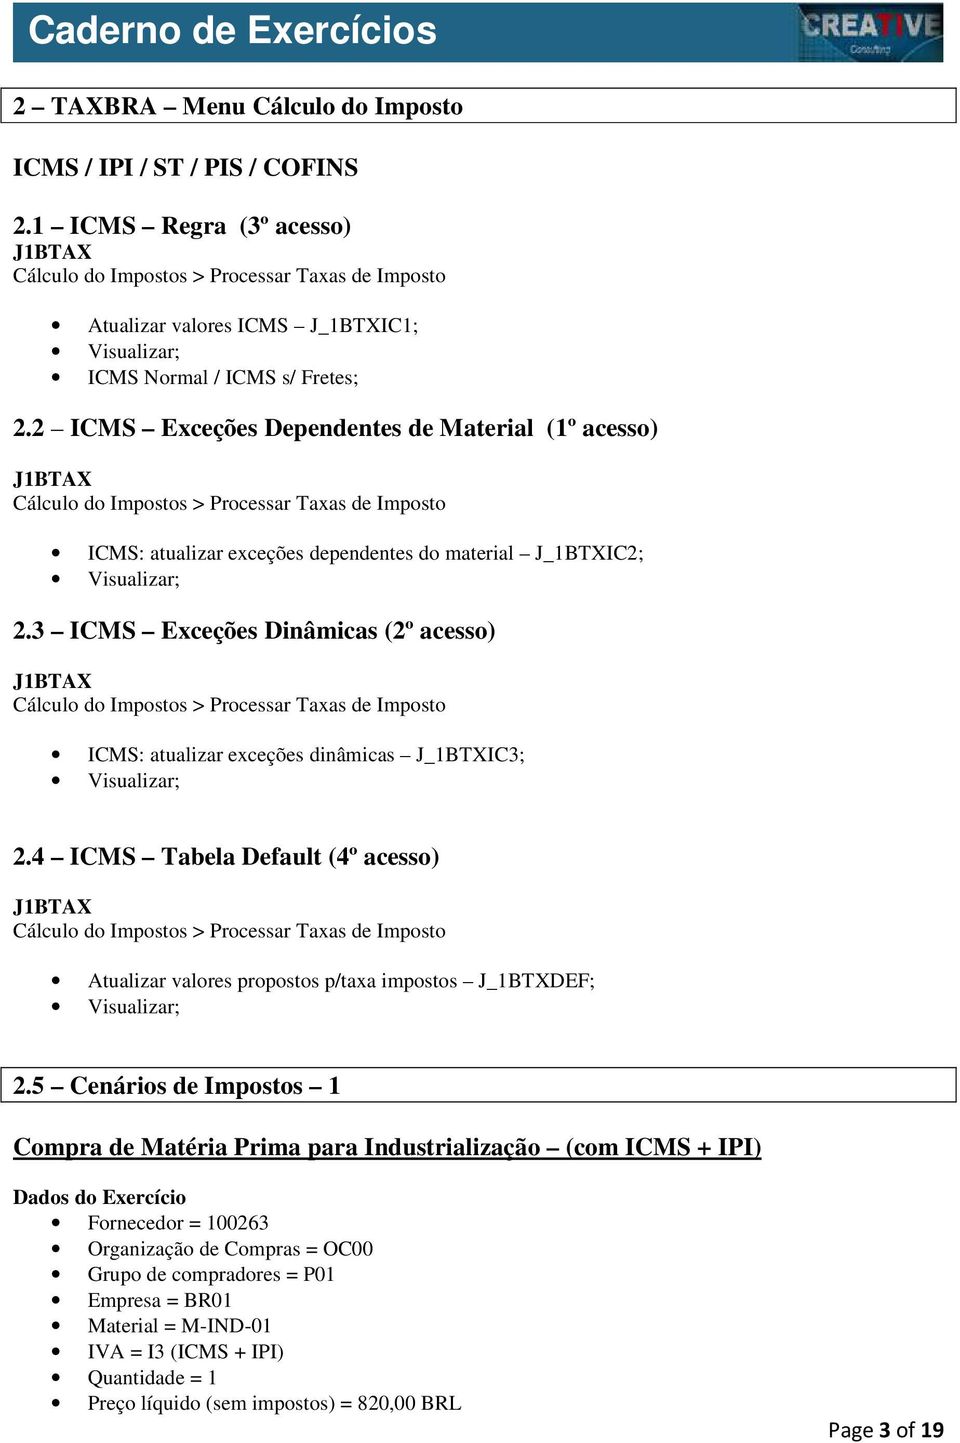 3 ICMS Exceções Dinâmicas (2º acesso) ICMS: atualizar exceções dinâmicas J_1BTXIC3; 2.4 ICMS Tabela Default (4º acesso) Atualizar valores propostos p/taxa impostos J_1BTXDEF; 2.